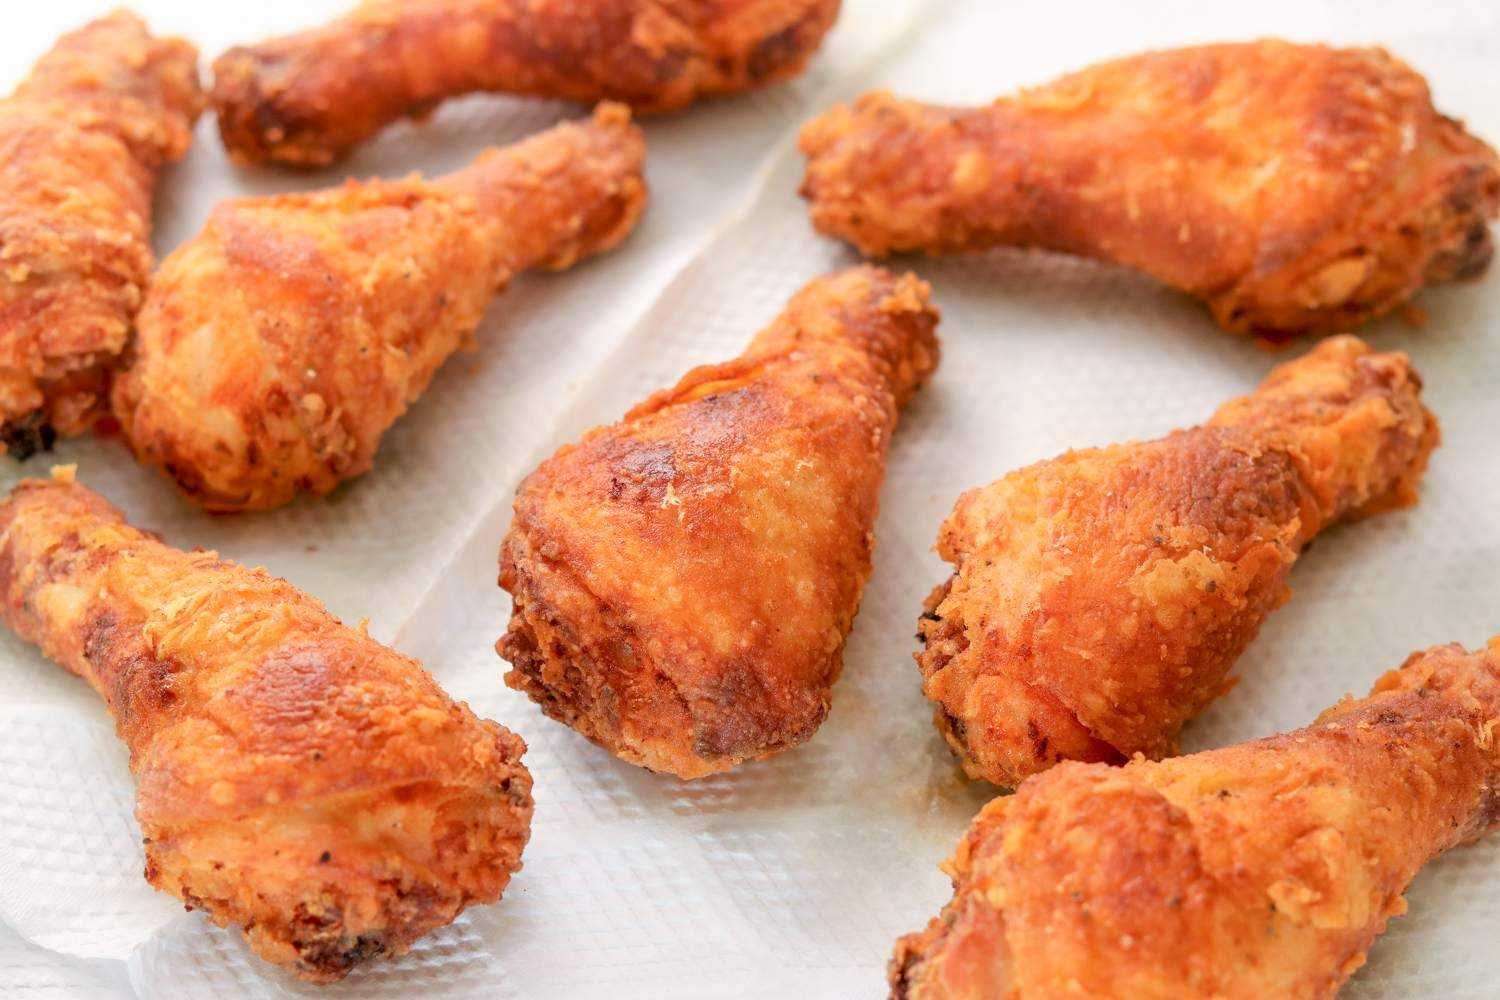 Рецепт куриные голени тушеные. калорийность, химический состав и пищевая ценность.